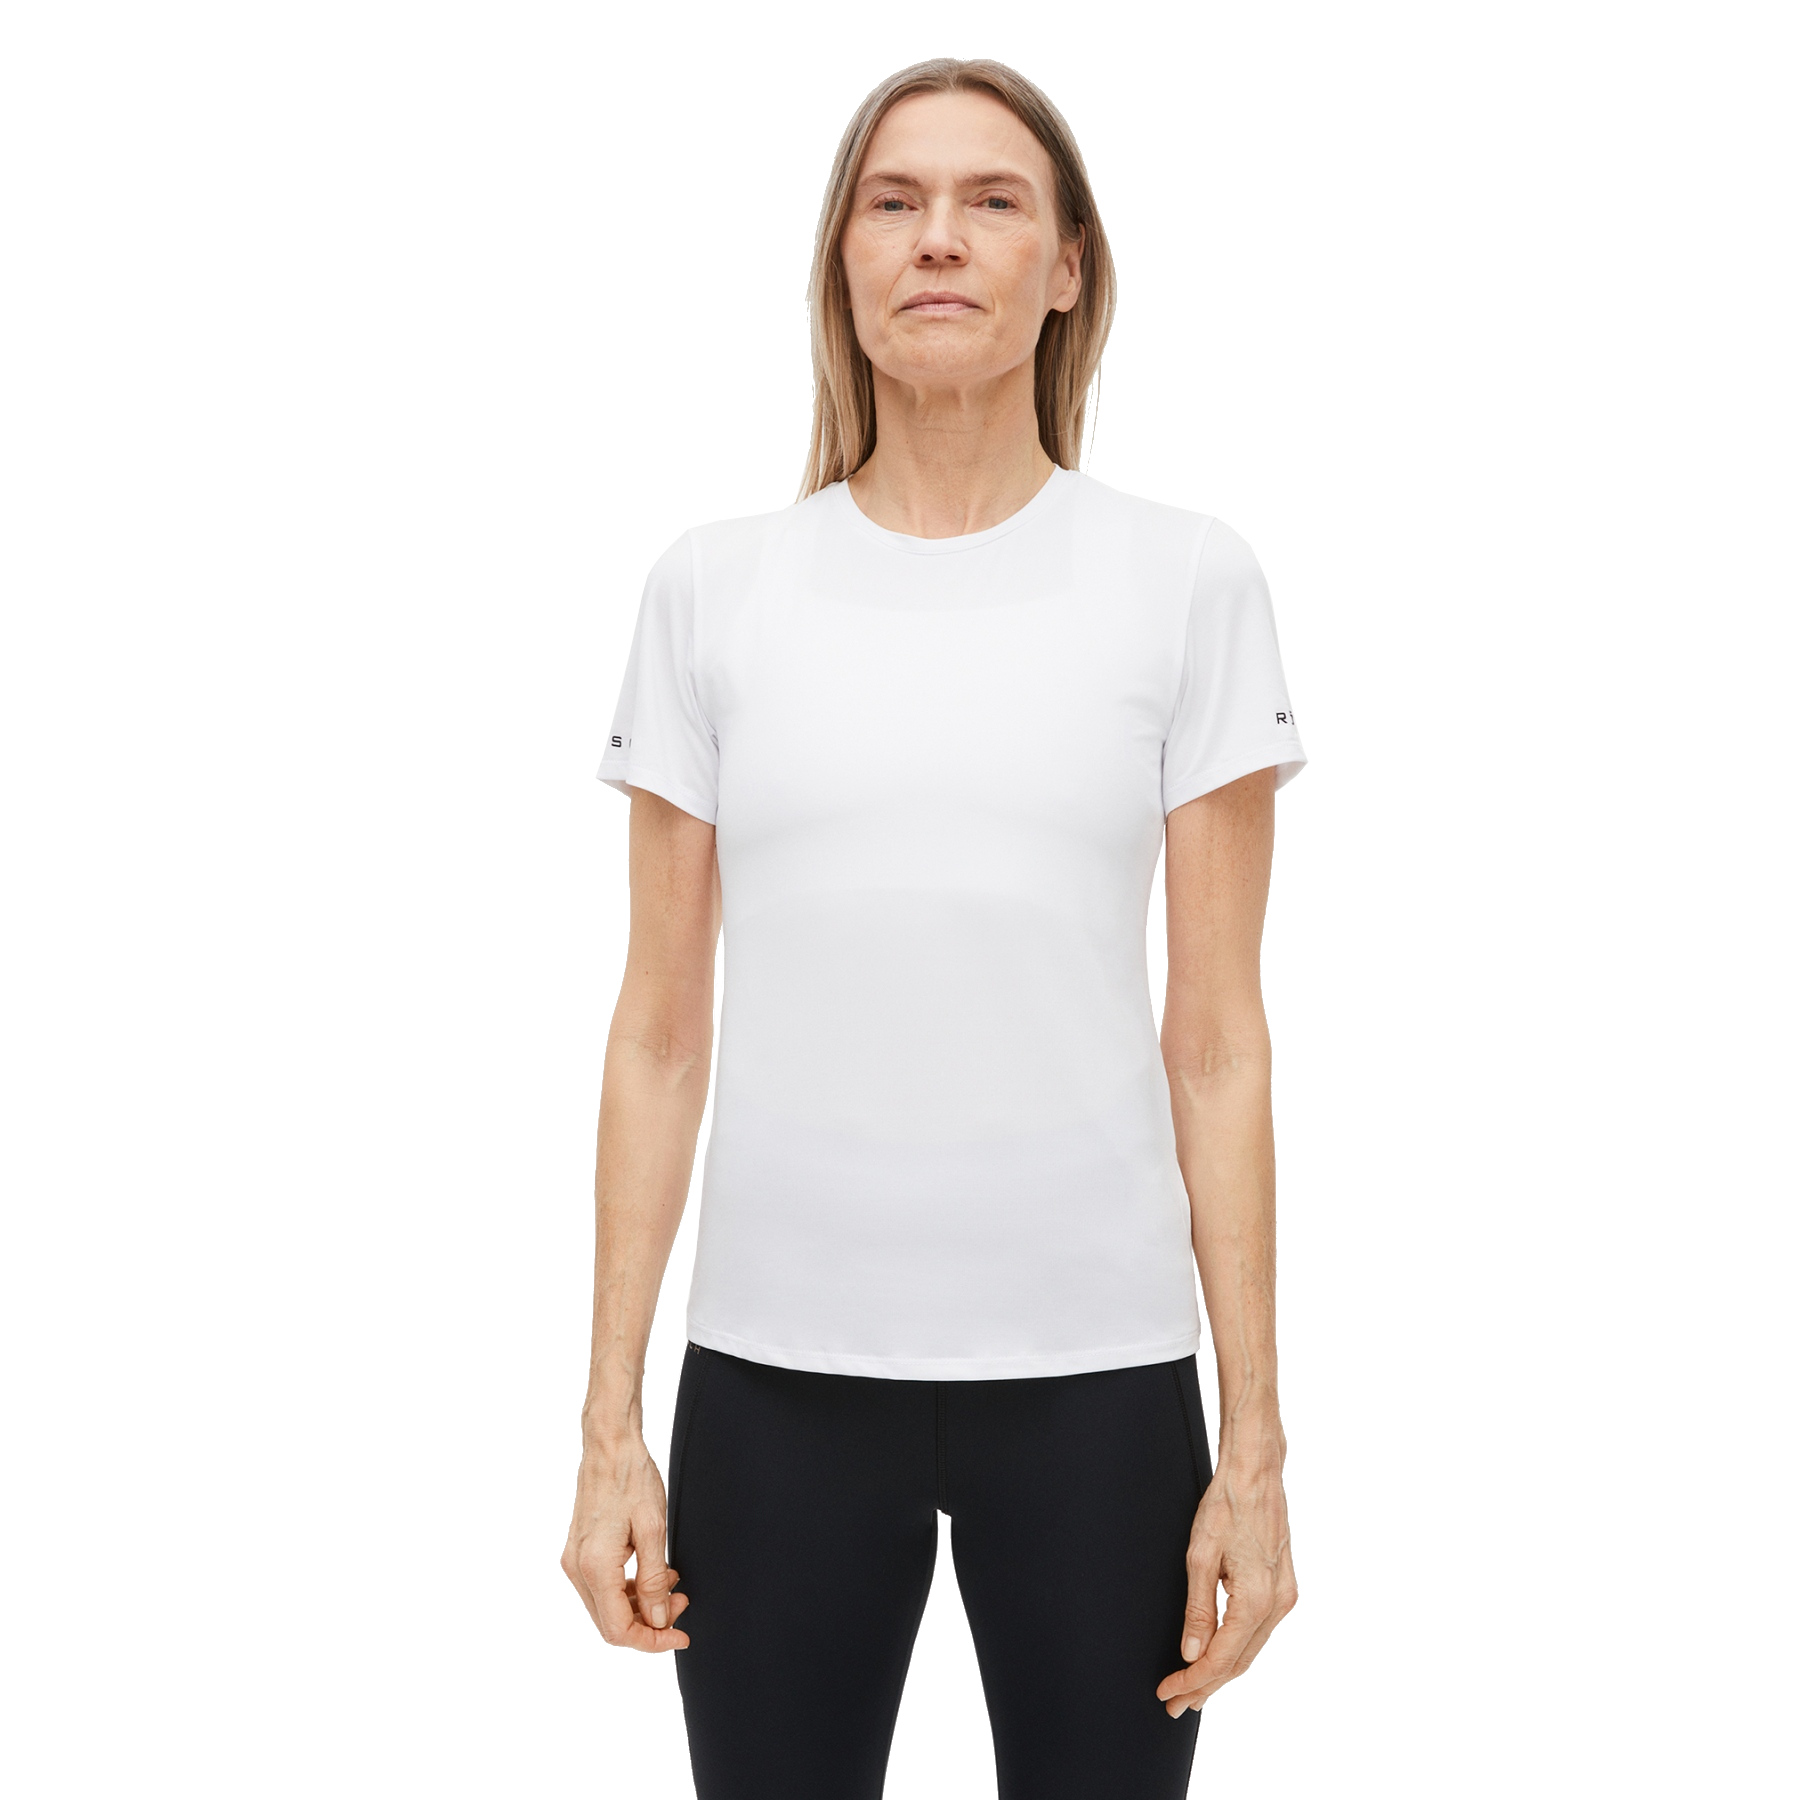 Produktbild von Röhnisch Arc Damen T-Shirt - Weiß